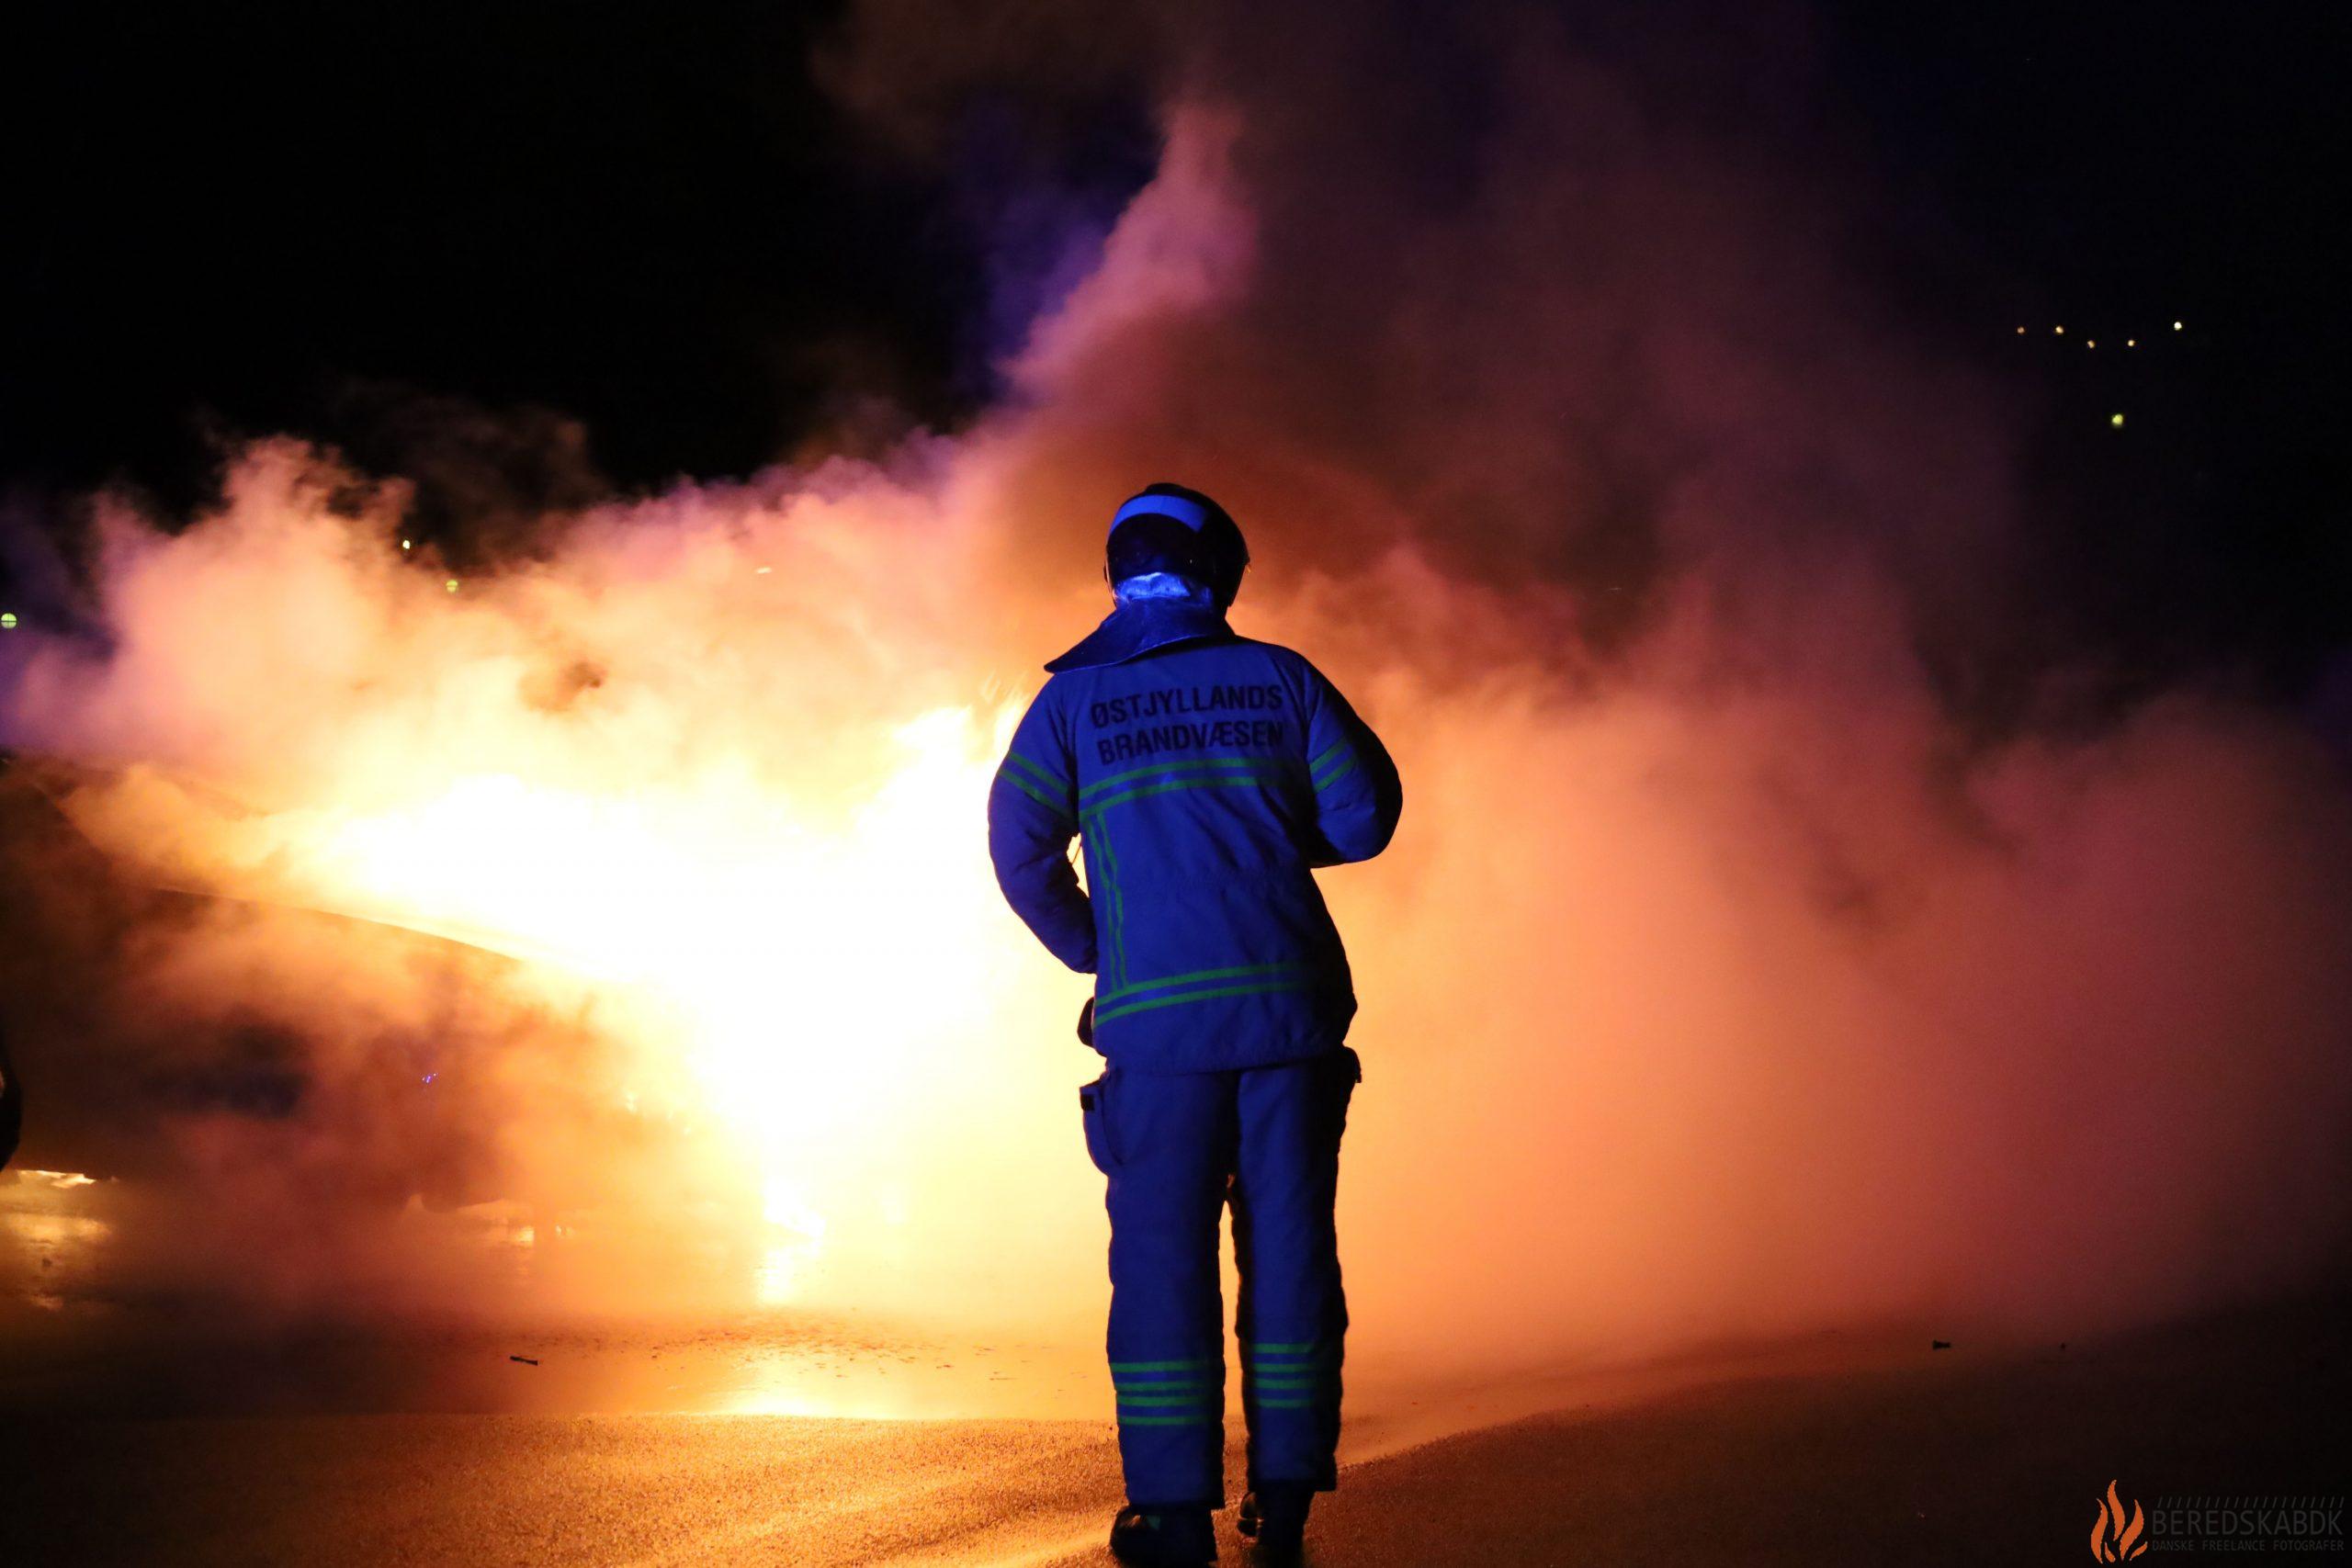 19/02-24  Brand i Bil på Rydevænget i Aarhus Vest